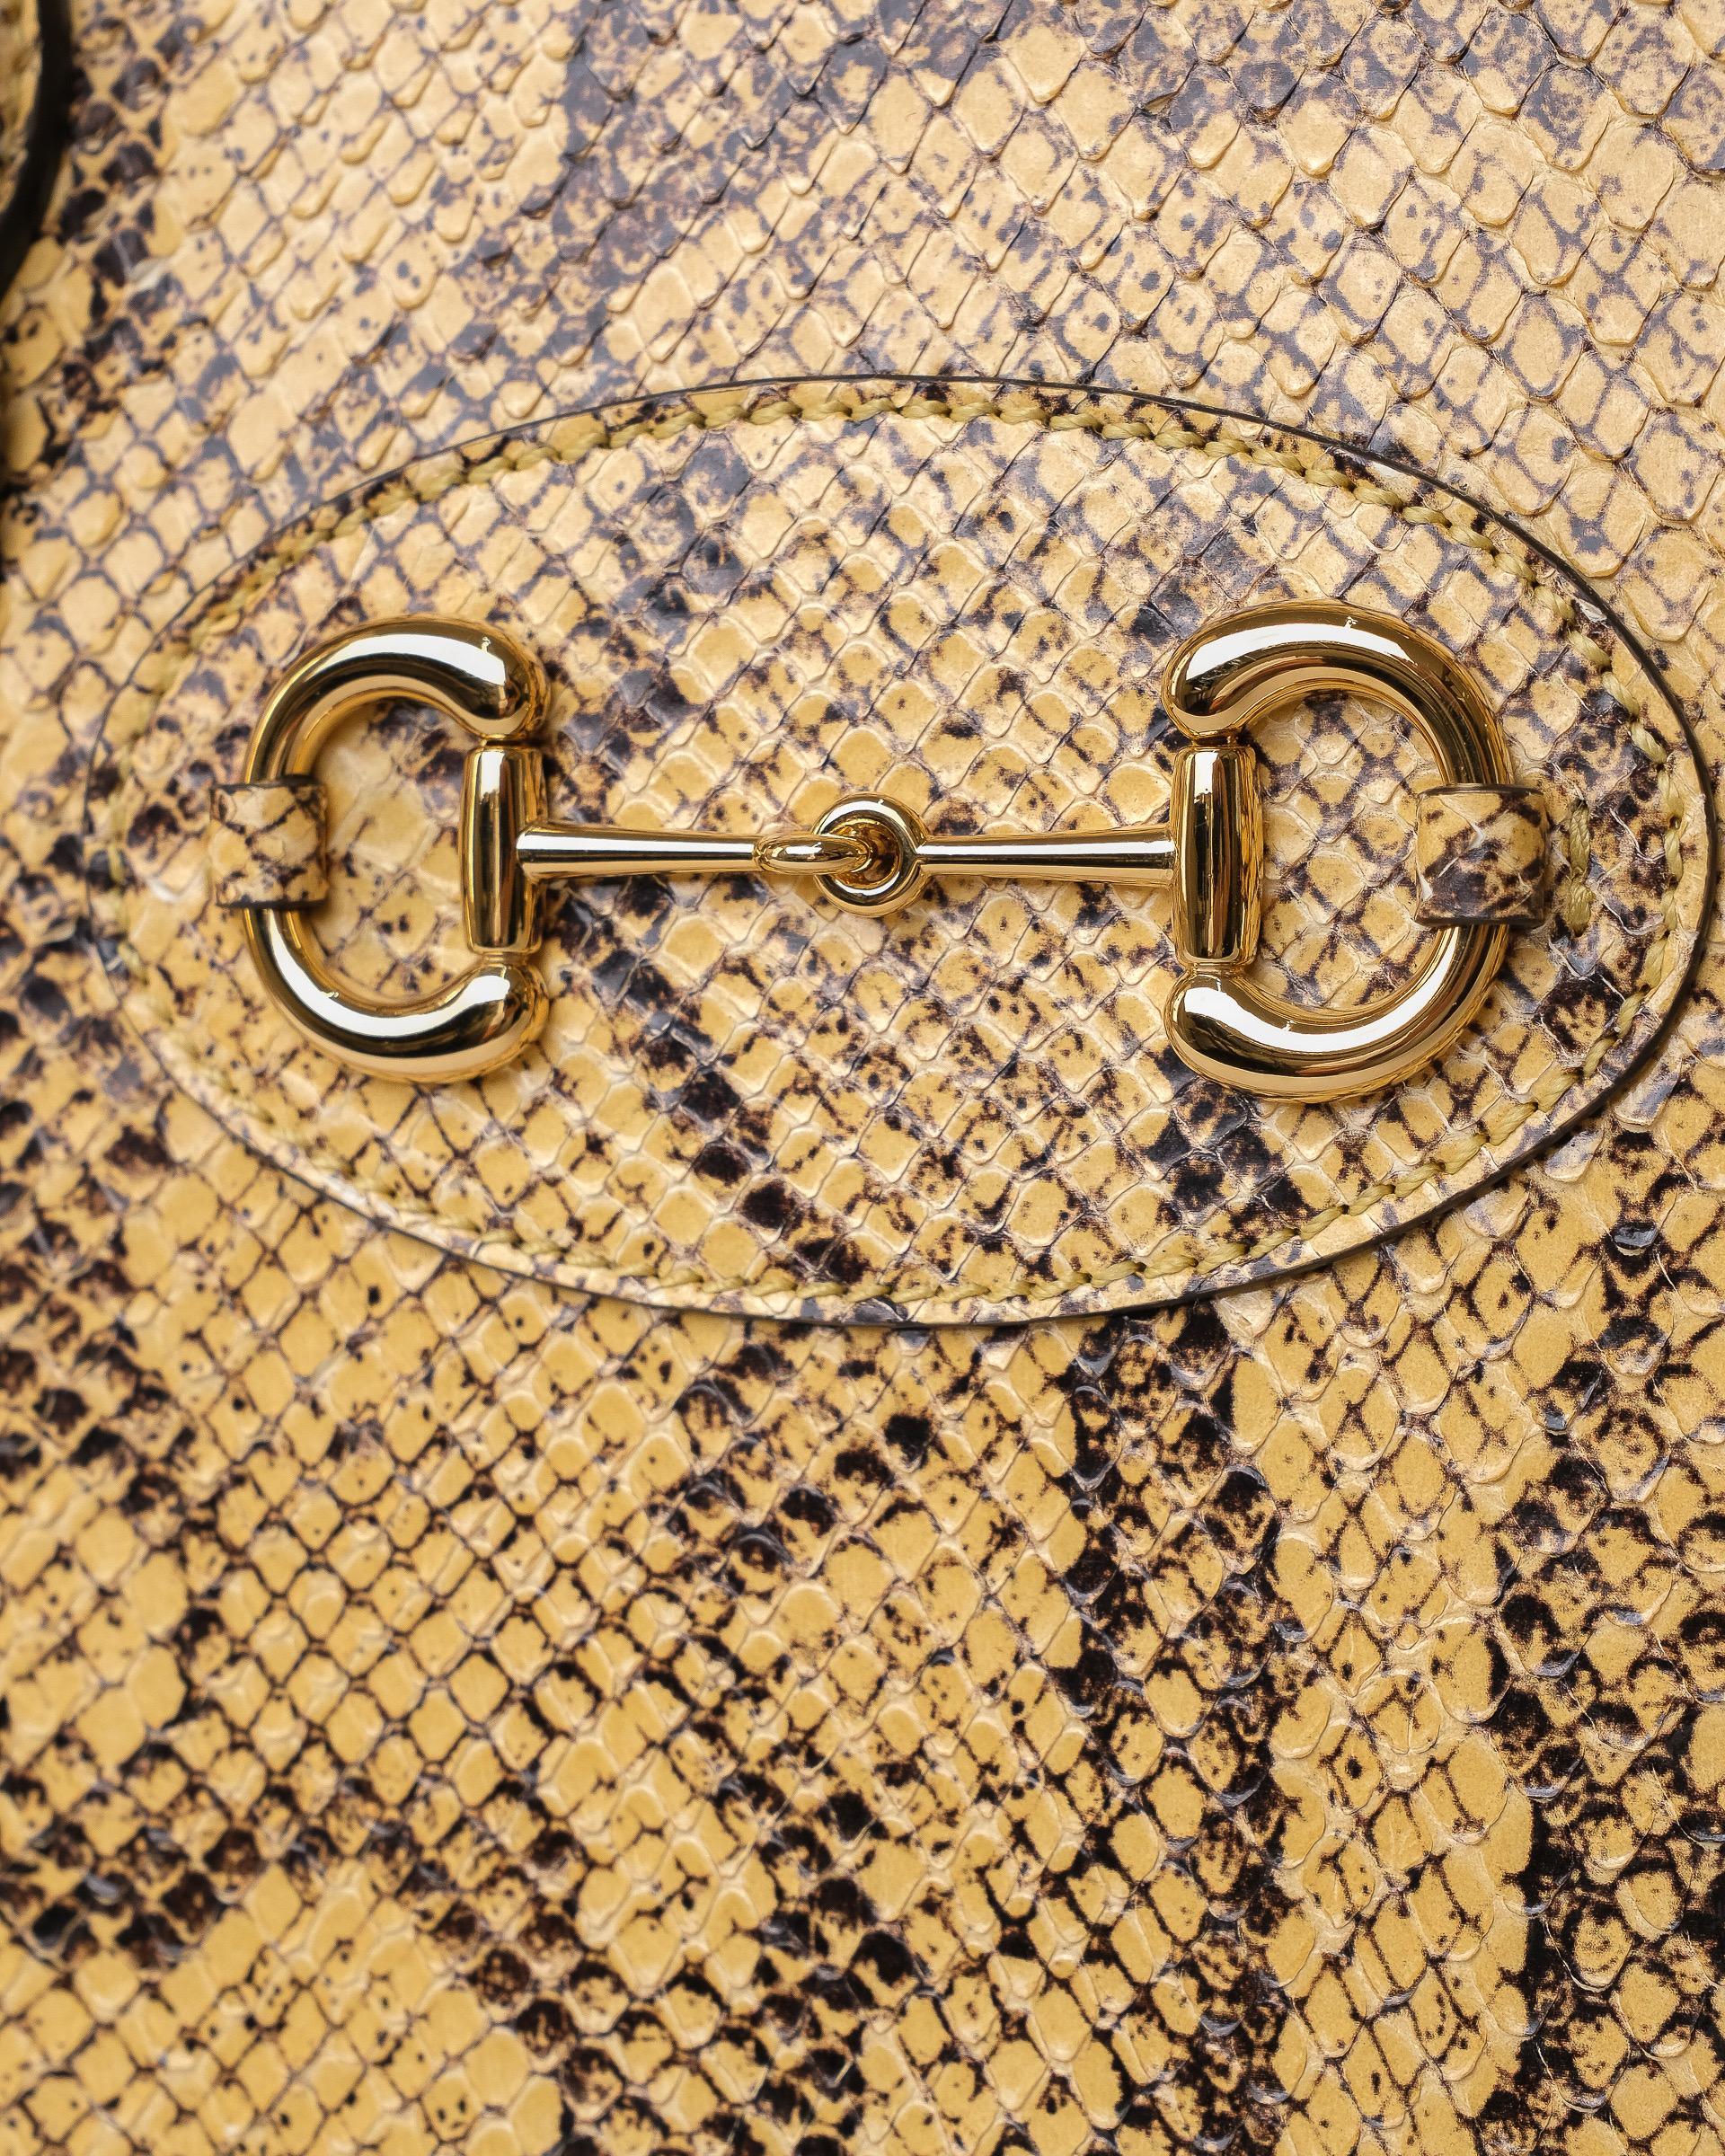 Borsa firmata Gucci, modello Horsebit Duffle, misura Medium, realizzata in pelle pitonata gialla con inserti in pelle nera e hardware neri. Dotata di una chiusura superiore a zip semicircolare, internamente rivestita in tela beige abbastanza